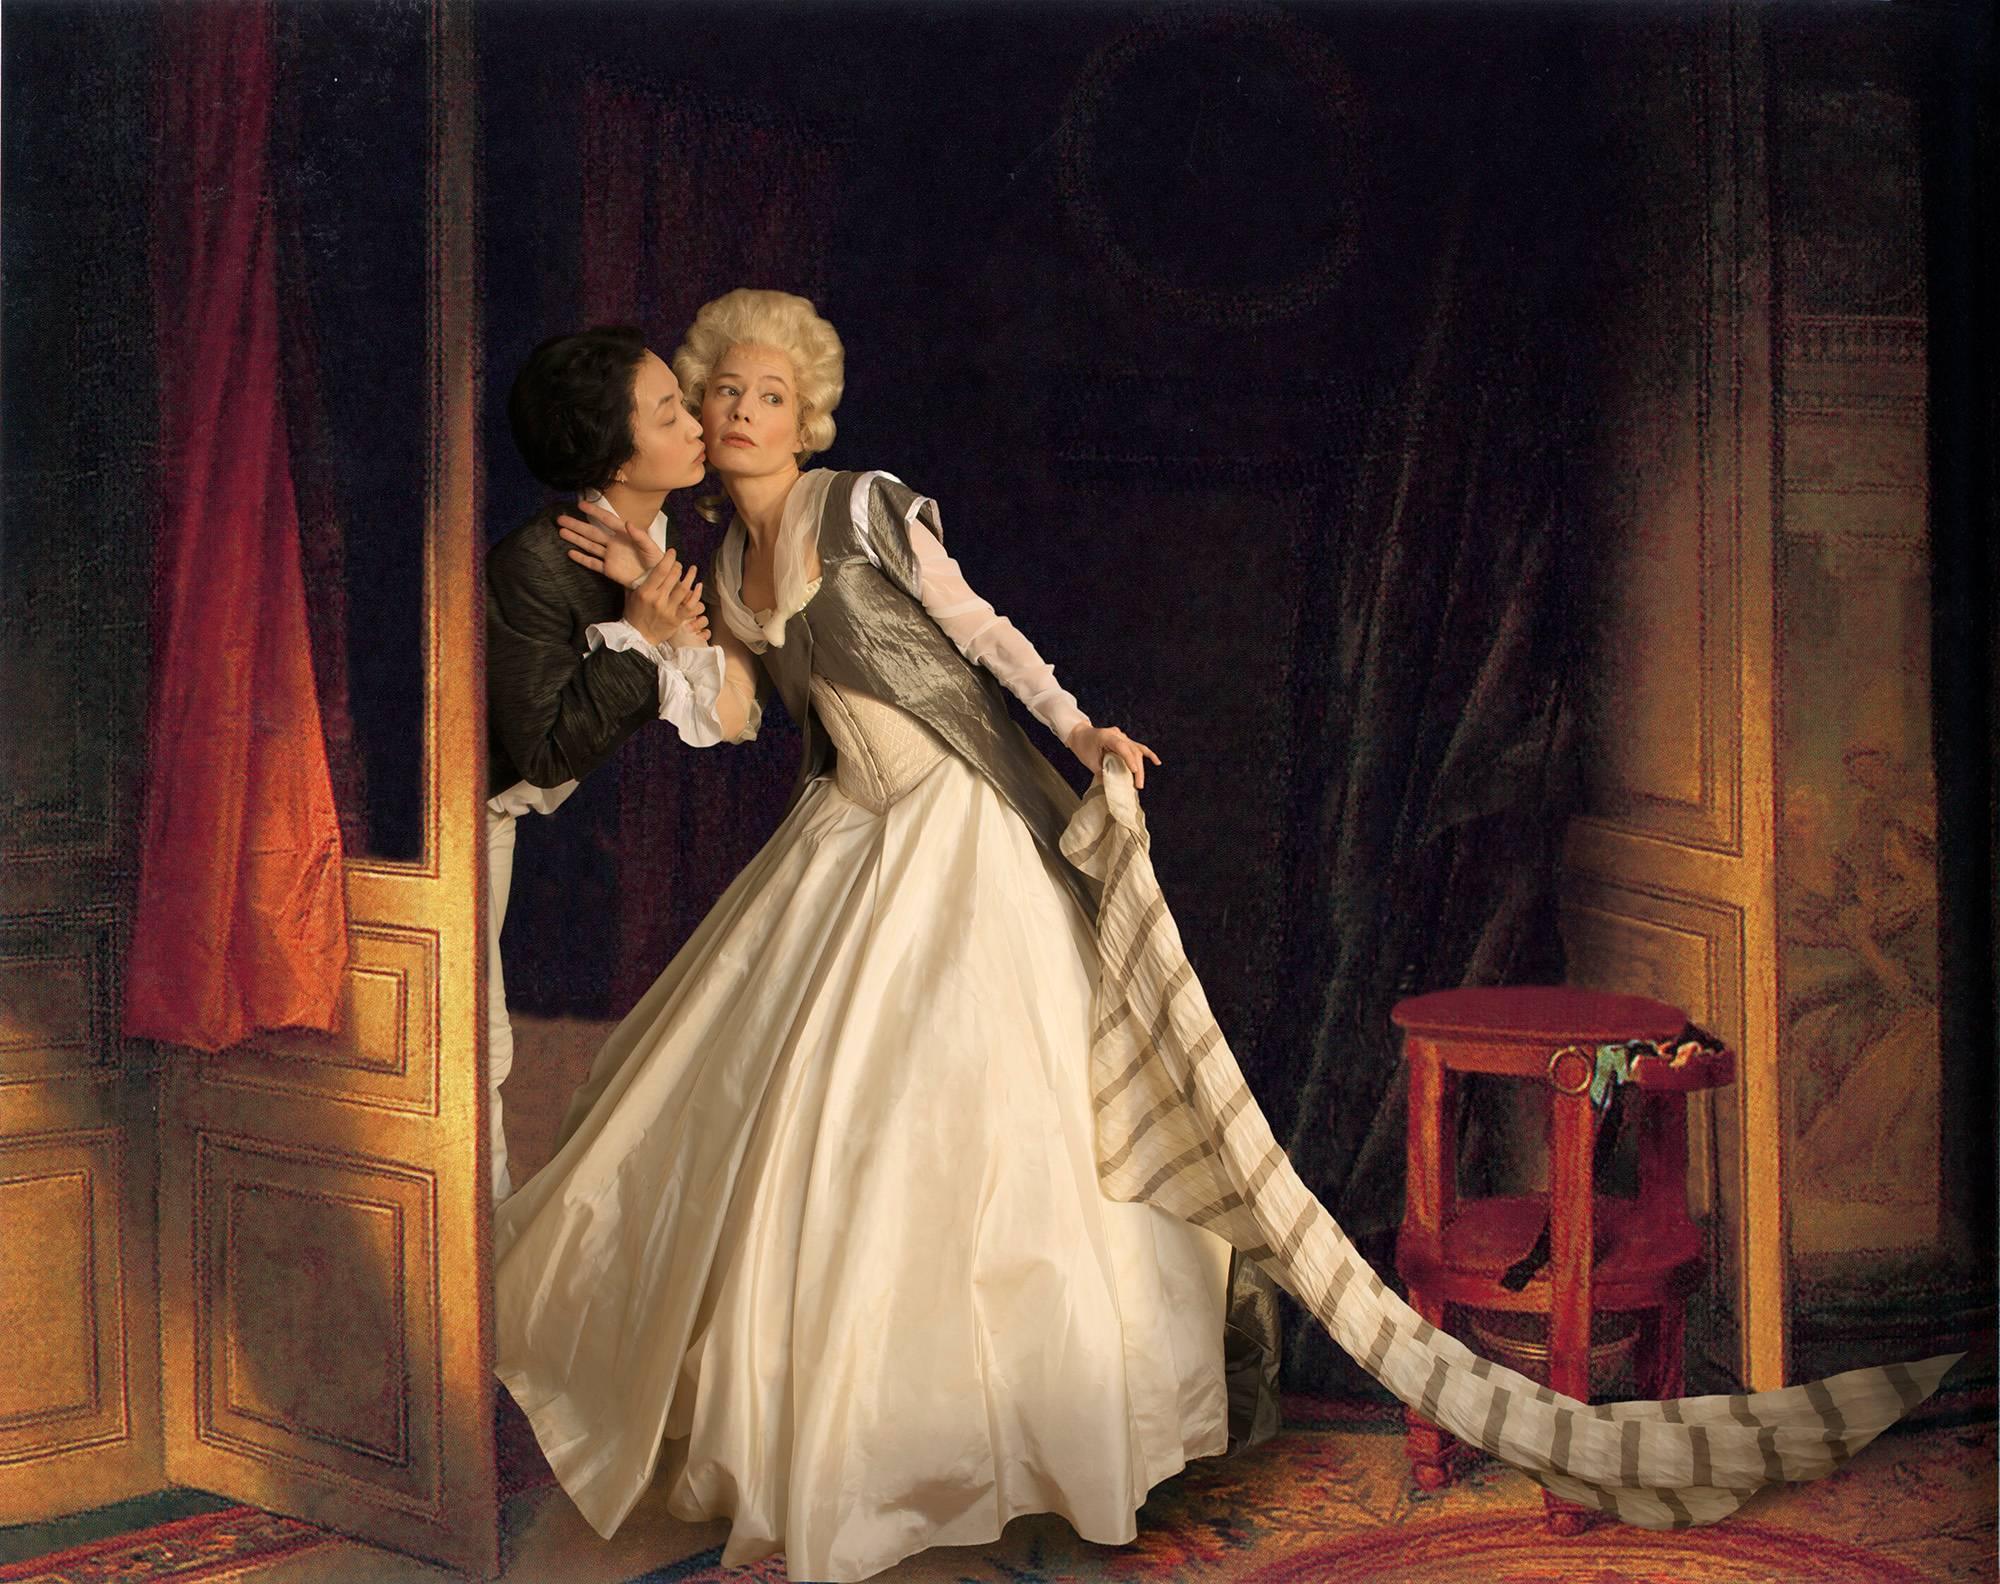 Figurative Photograph E2 - Kleinveld & Julien - Fragonard's The Stolen Kiss - Ode to Fragonard